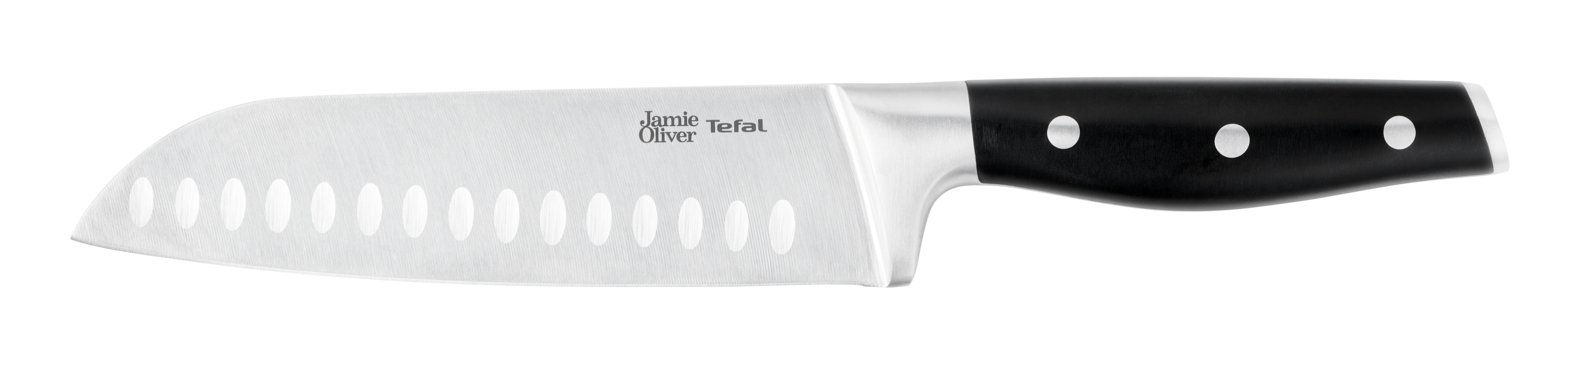 Нож сантоку Jamie Oliver 18 см K2671844 нож сантоку jamie oliver k2671556 16 5 см